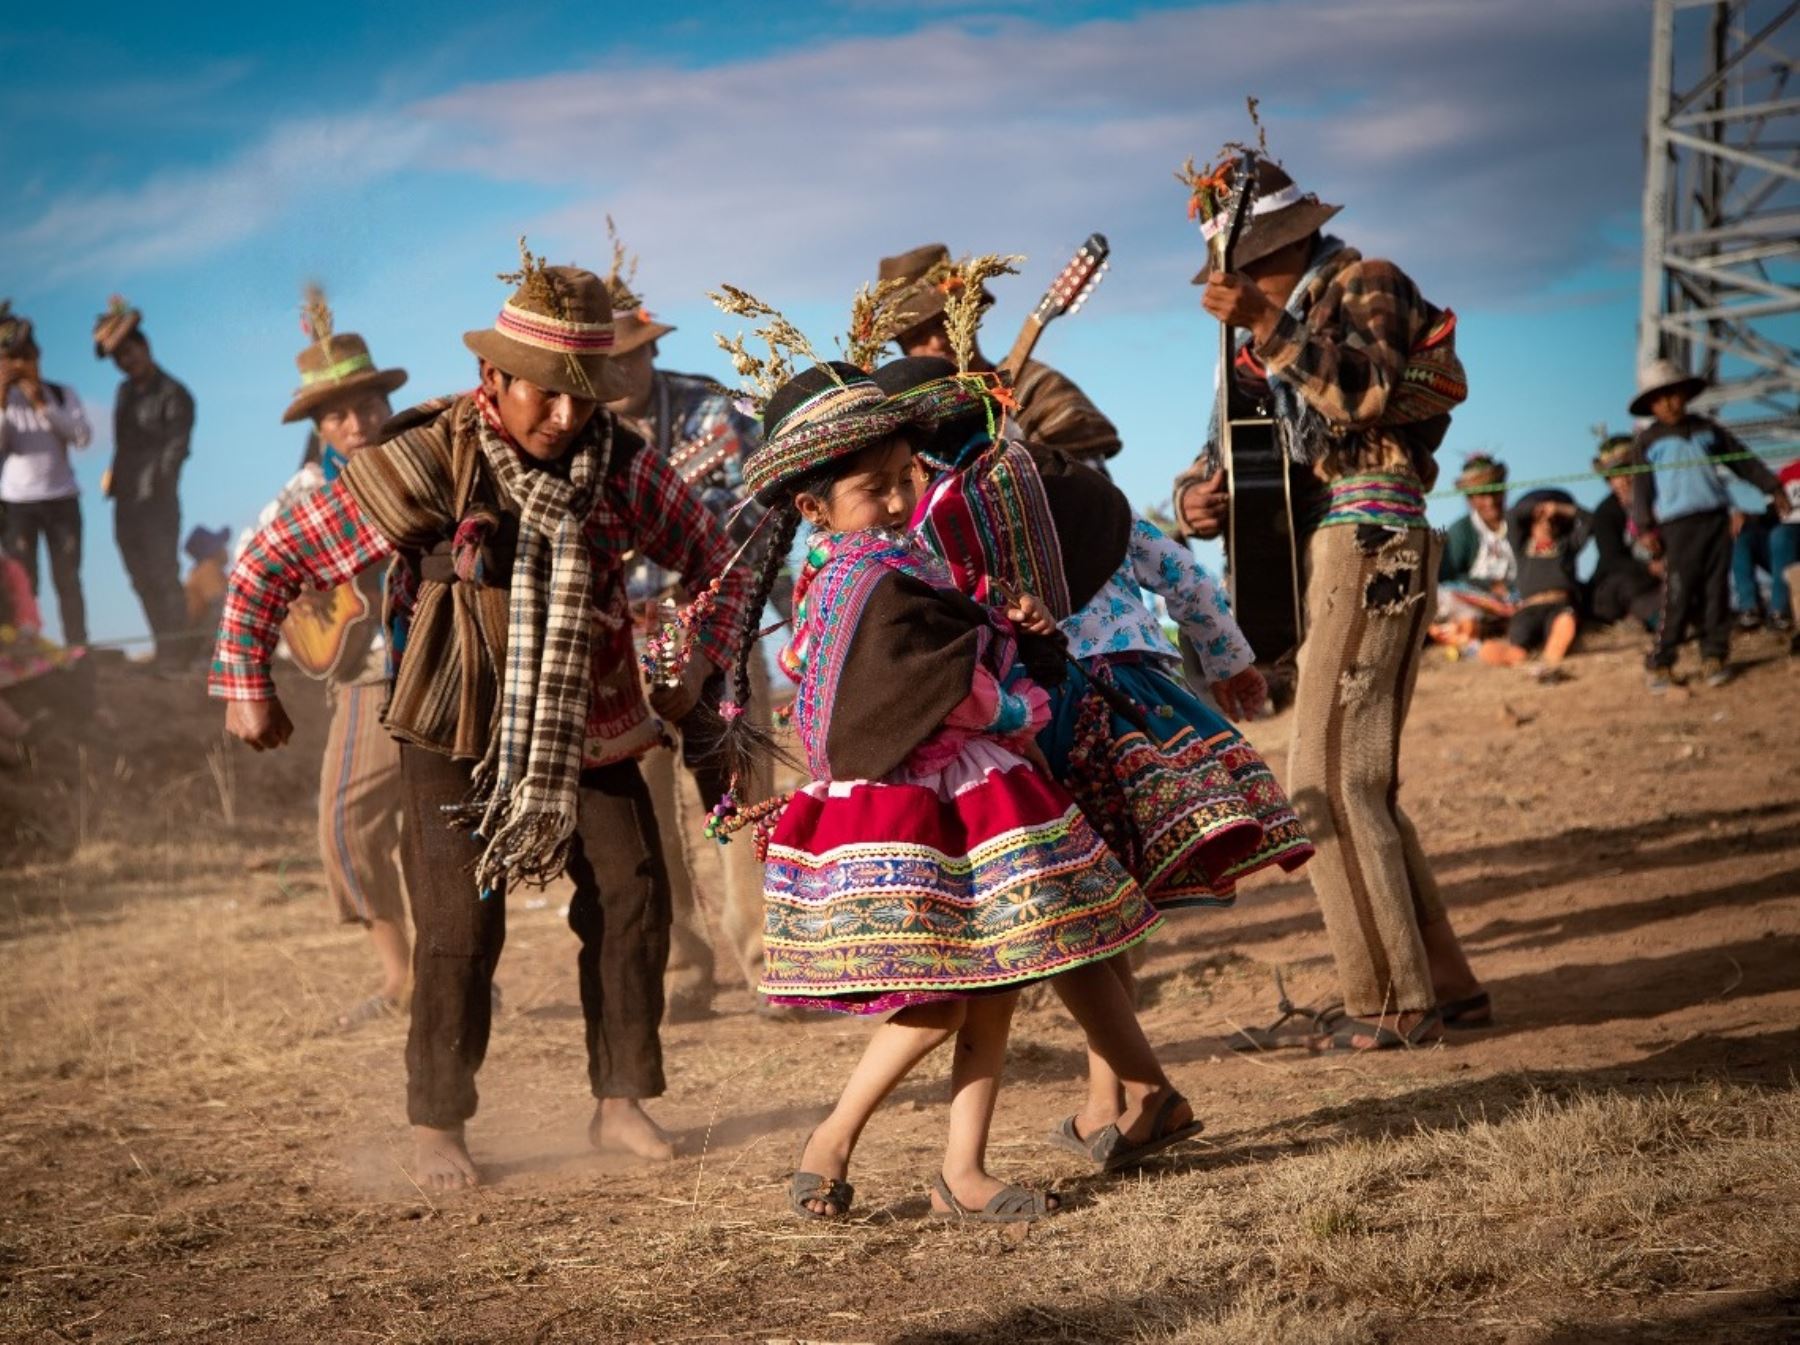 La expresión cultural Chimaycha con Chinlili, que se escenifica en tres provincias de Ayacucho, fue declarada Patrimonio Cultural de la Nación por el Ministerio de Cultura.